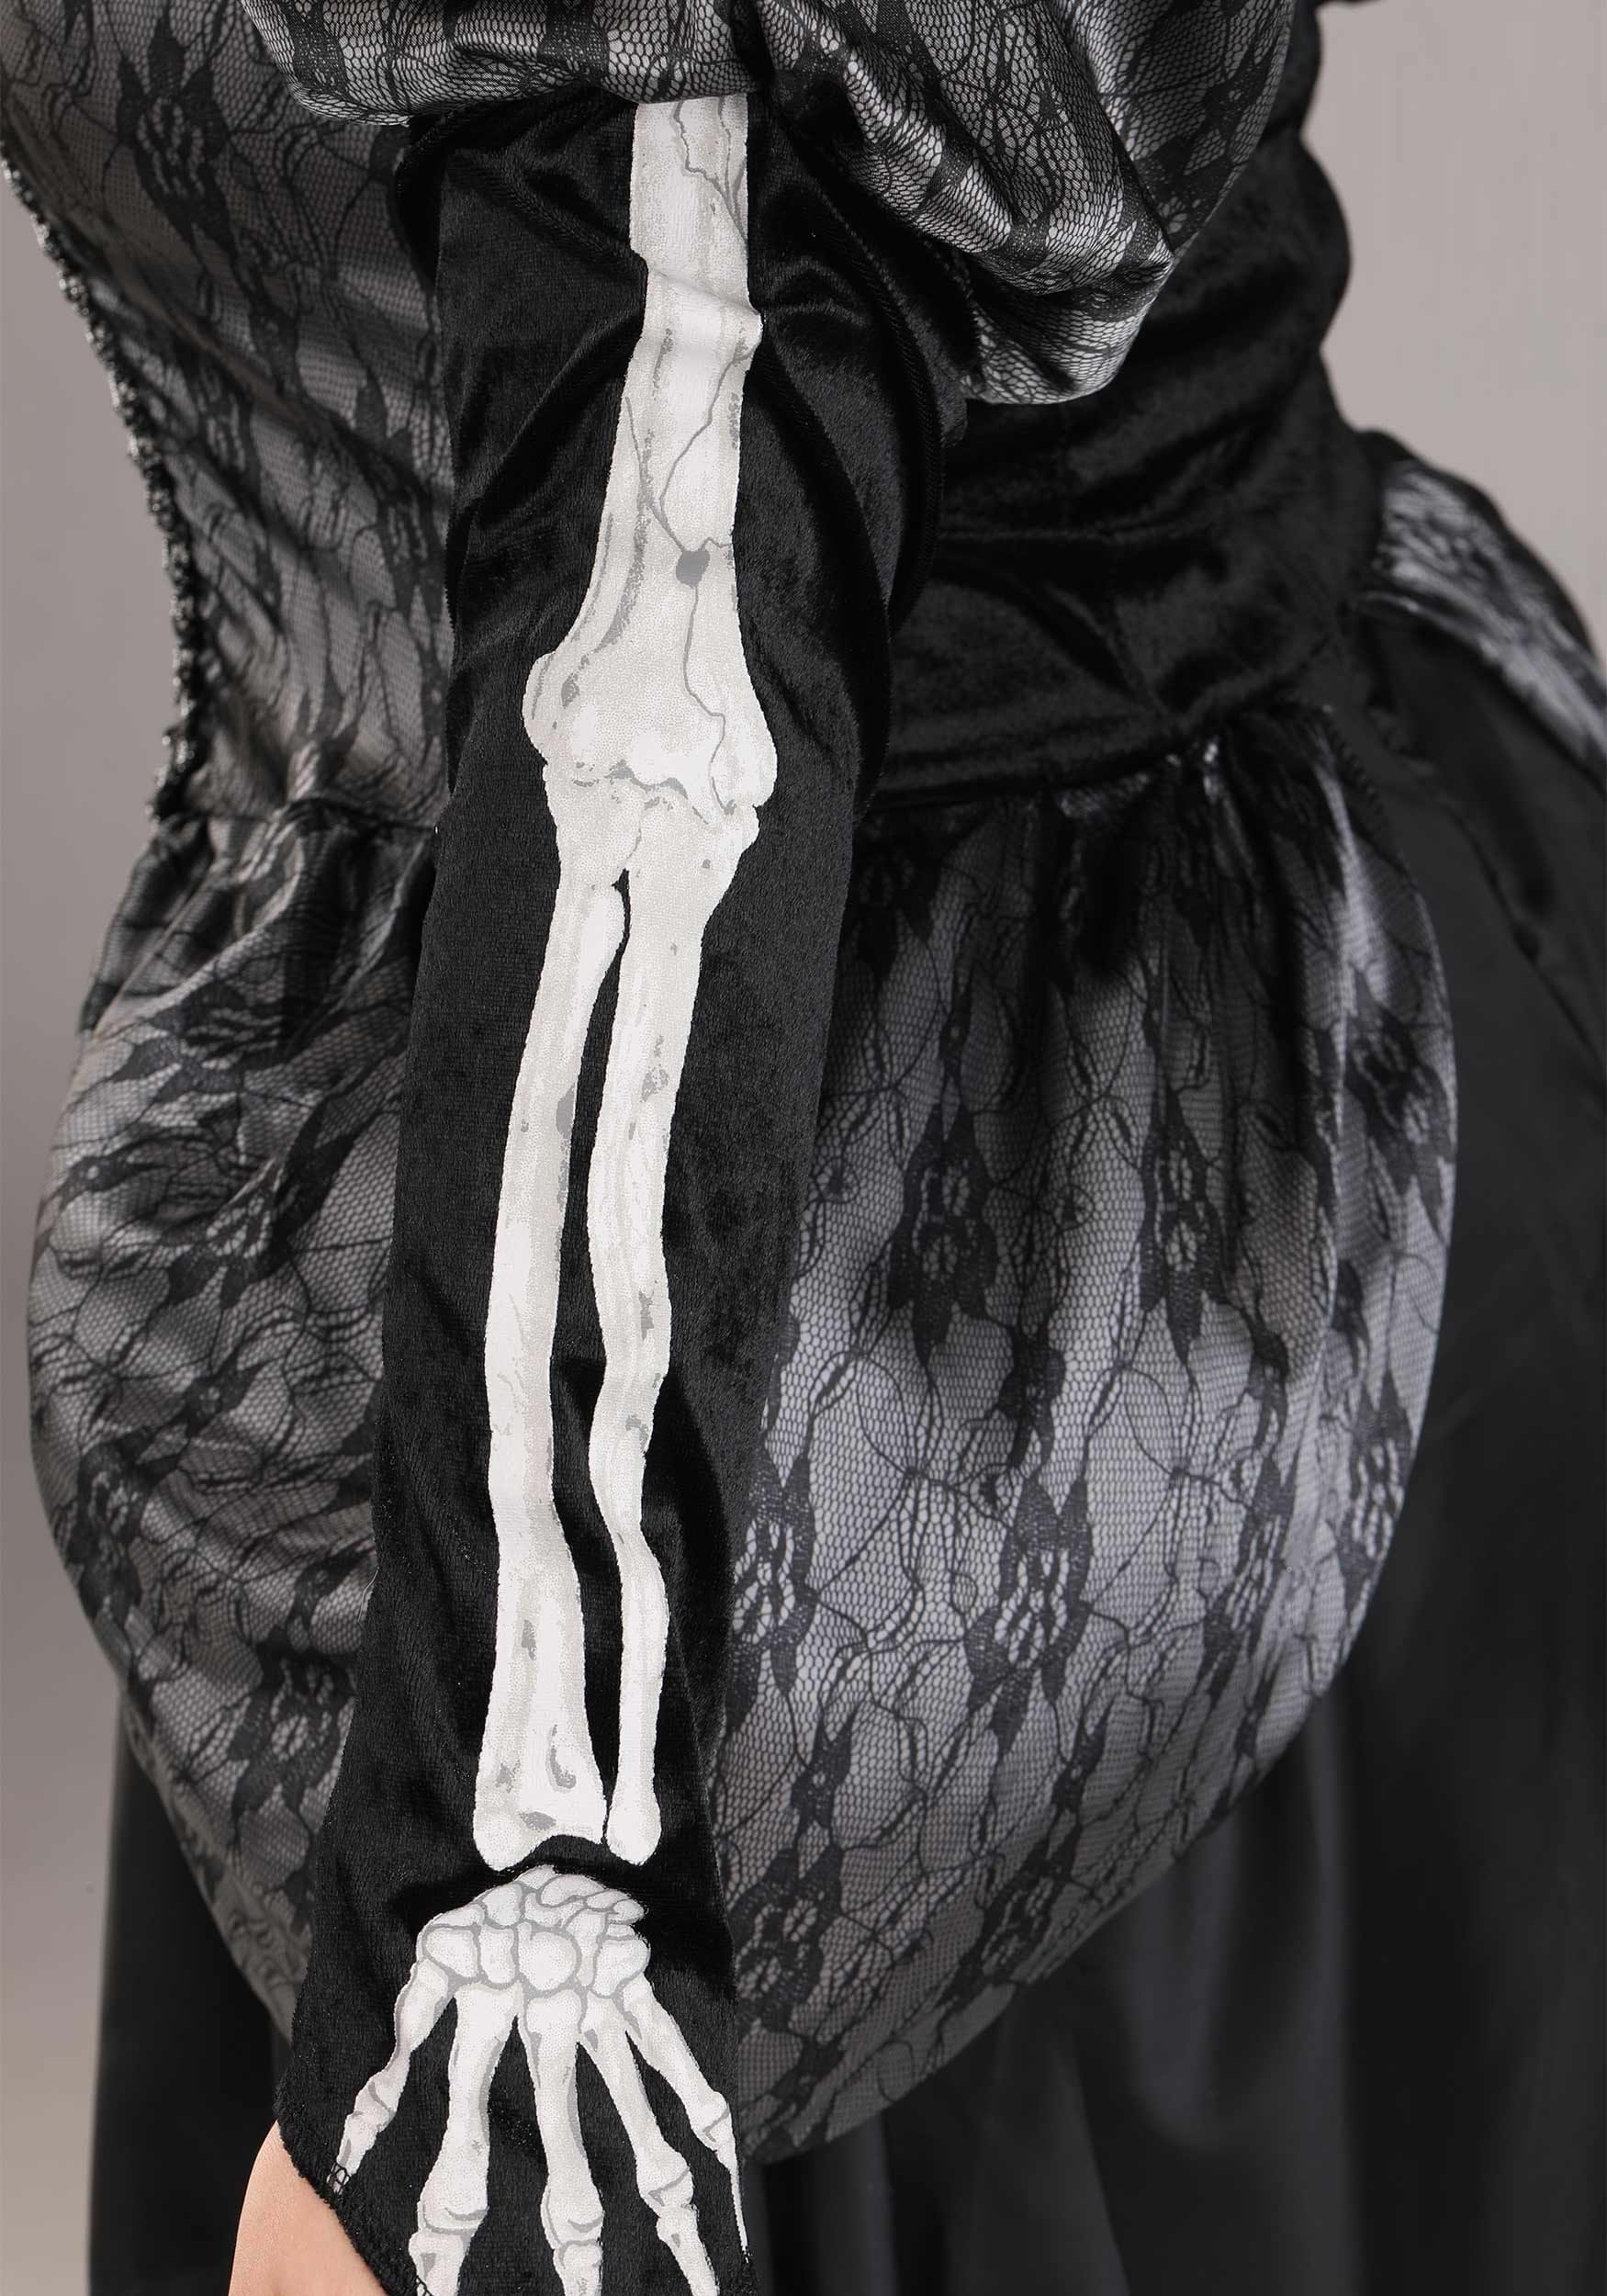 Skeleton Queen Costume For Women